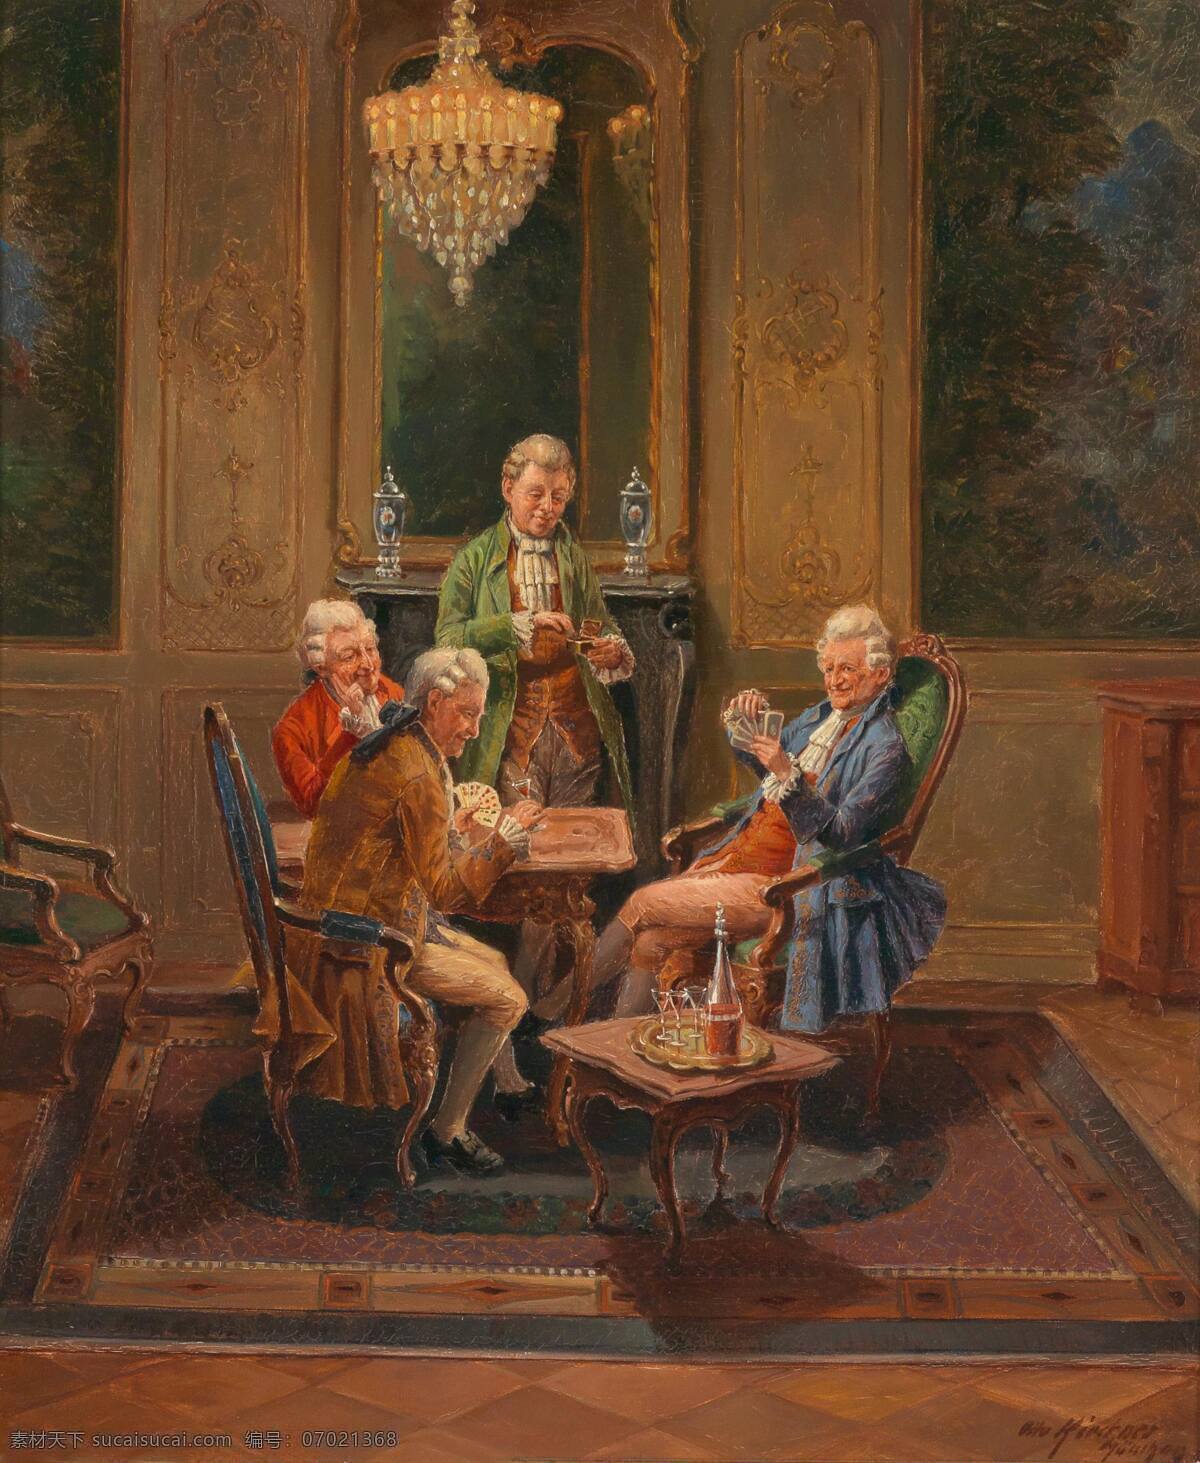 纸牌游戏 贵族之家 四位老绅士 镜子前 桌子 古典油画 油画 绘画书法 文化艺术